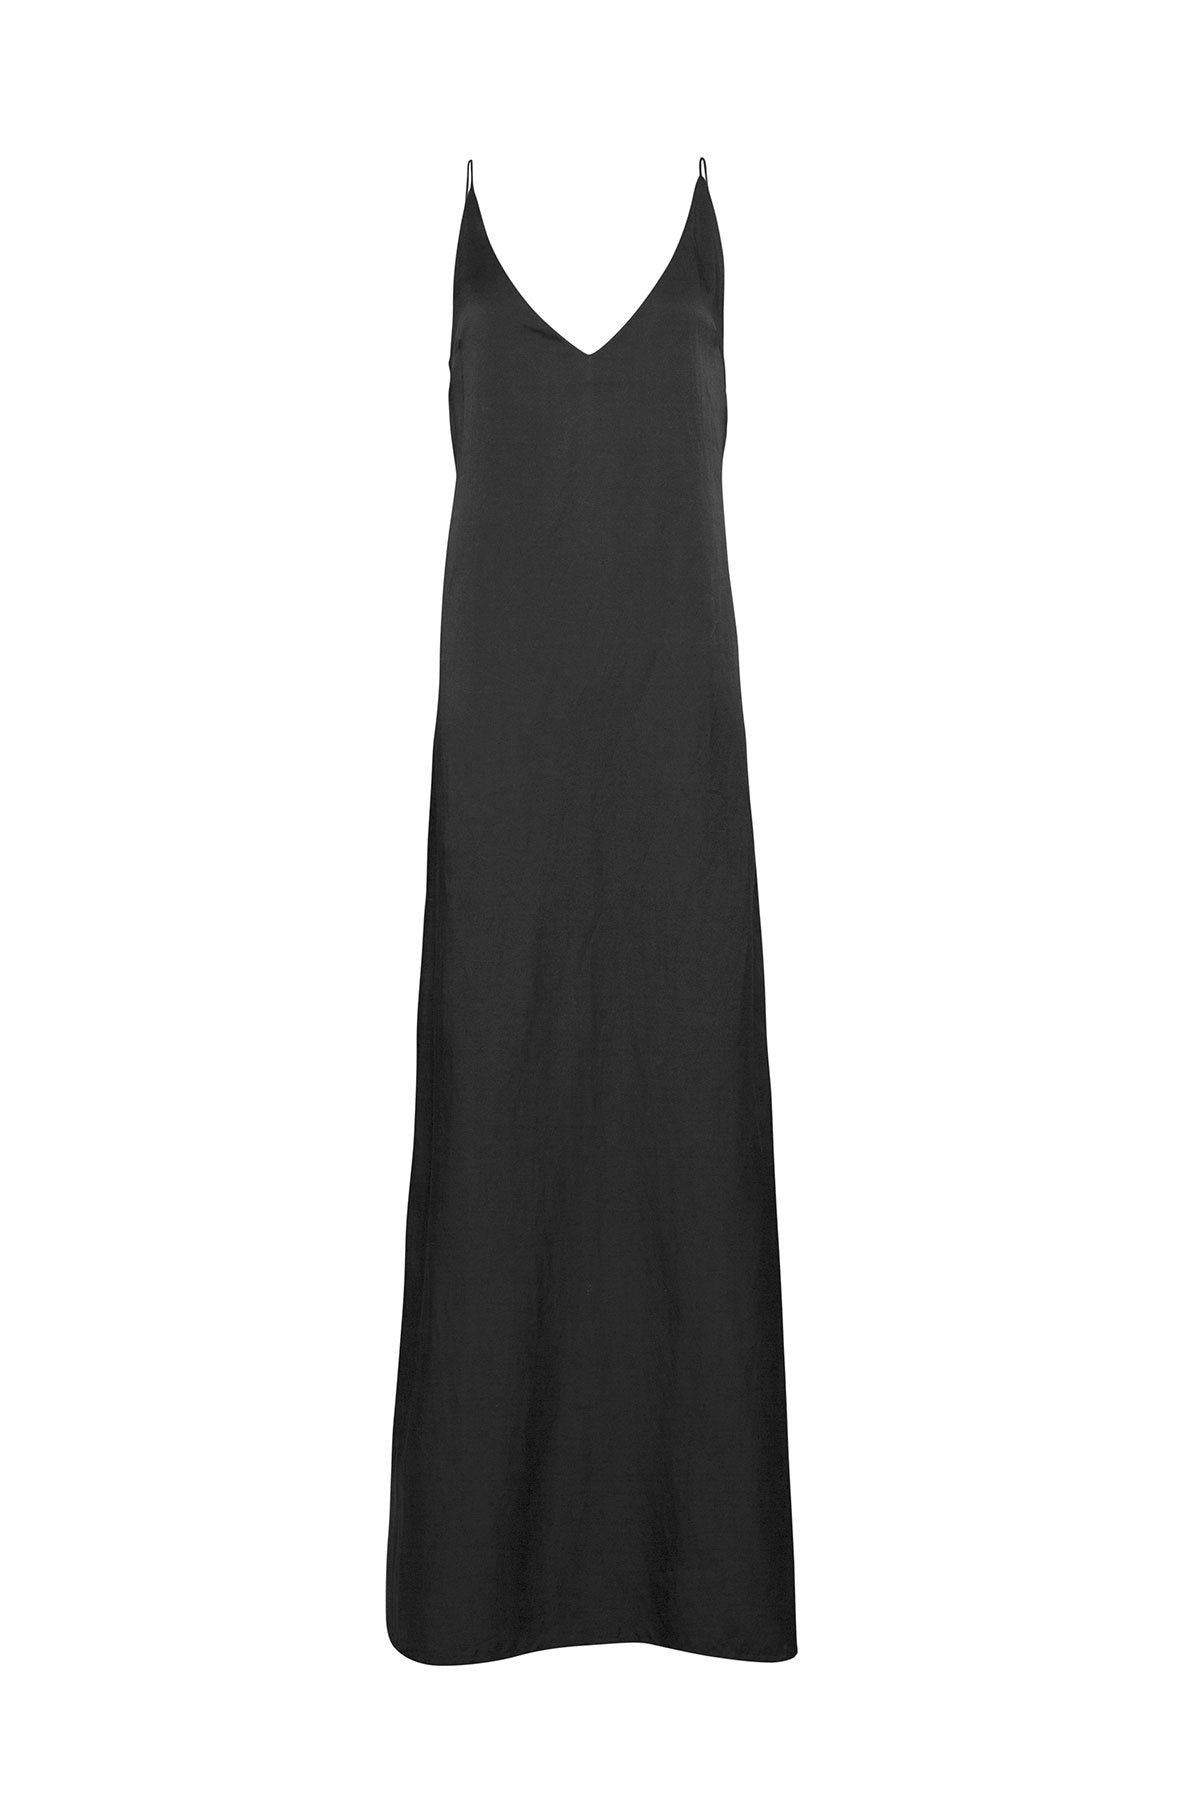 The Klimt Full Length Dress - Ebony – L O O M E S